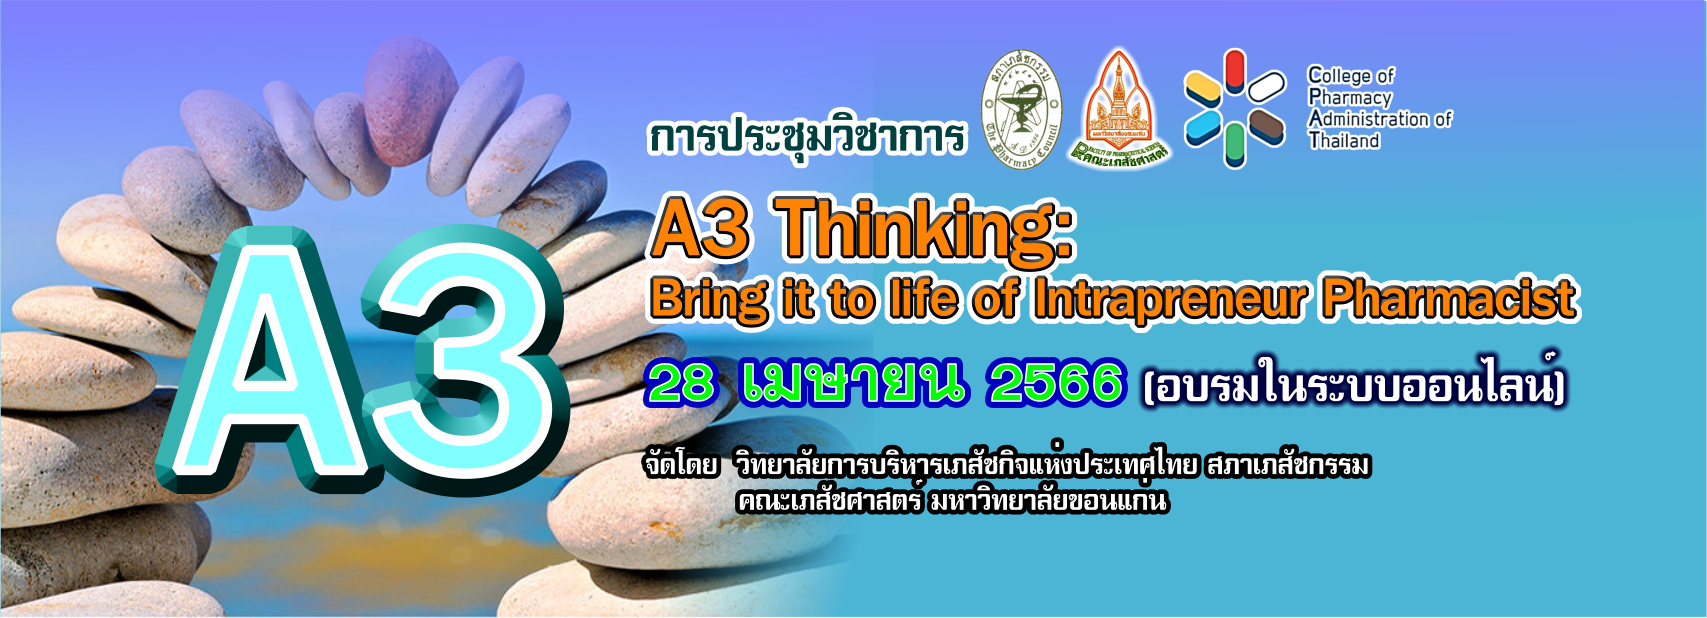 การประชุมวิชาการ ครั้งที่ 28 เรื่อง A3 Thinking: Bring it to life of Intrapreneur Pharmacist 